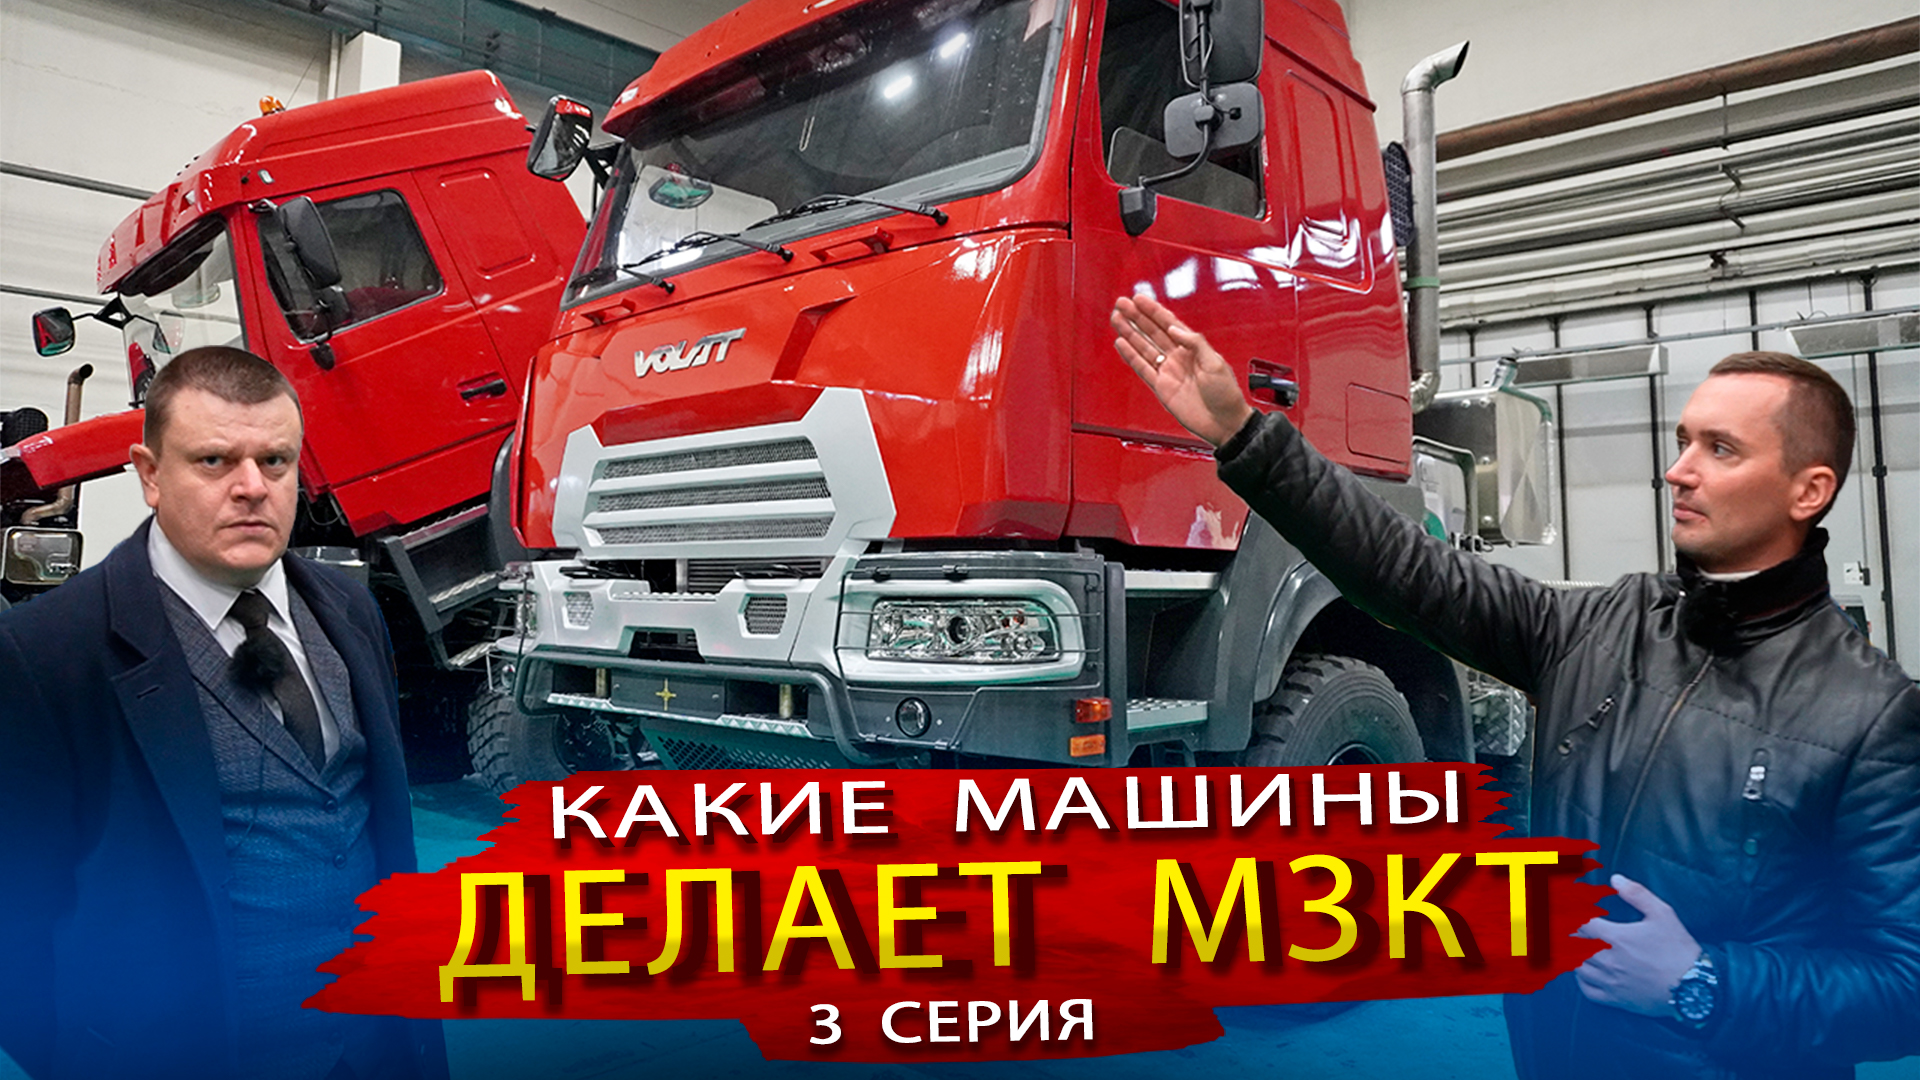 Эти грузовики уже доступны в России / Уникальные автомобили производства МЗКТ